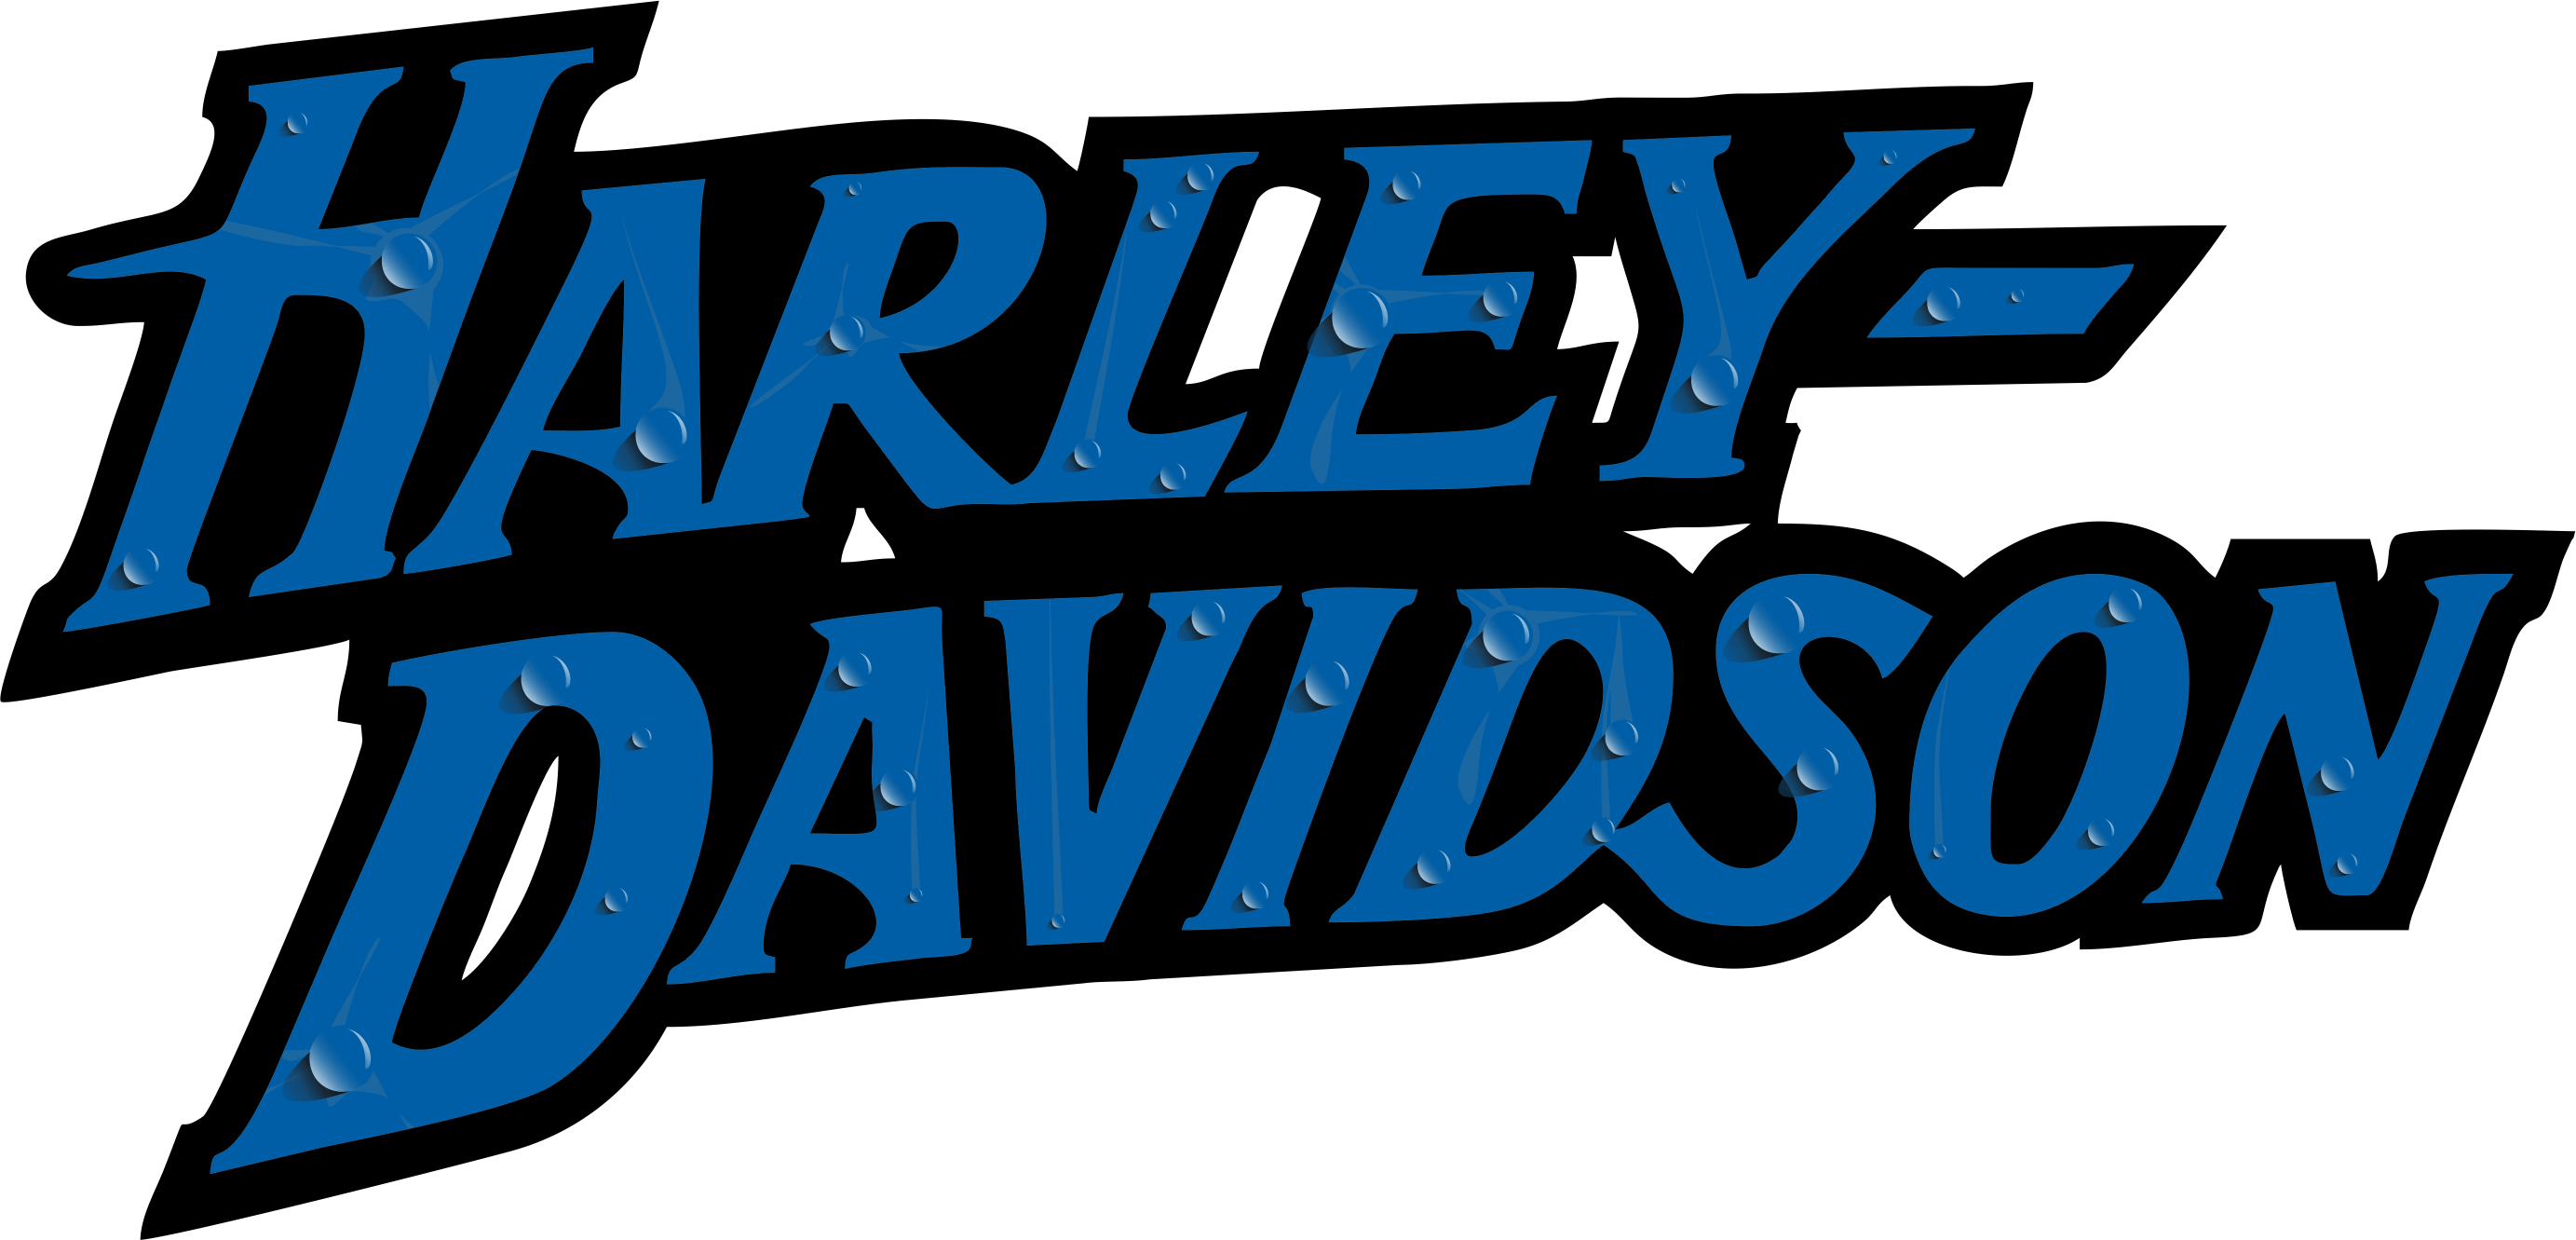 Harley Davidson Logos PNG Free File Download